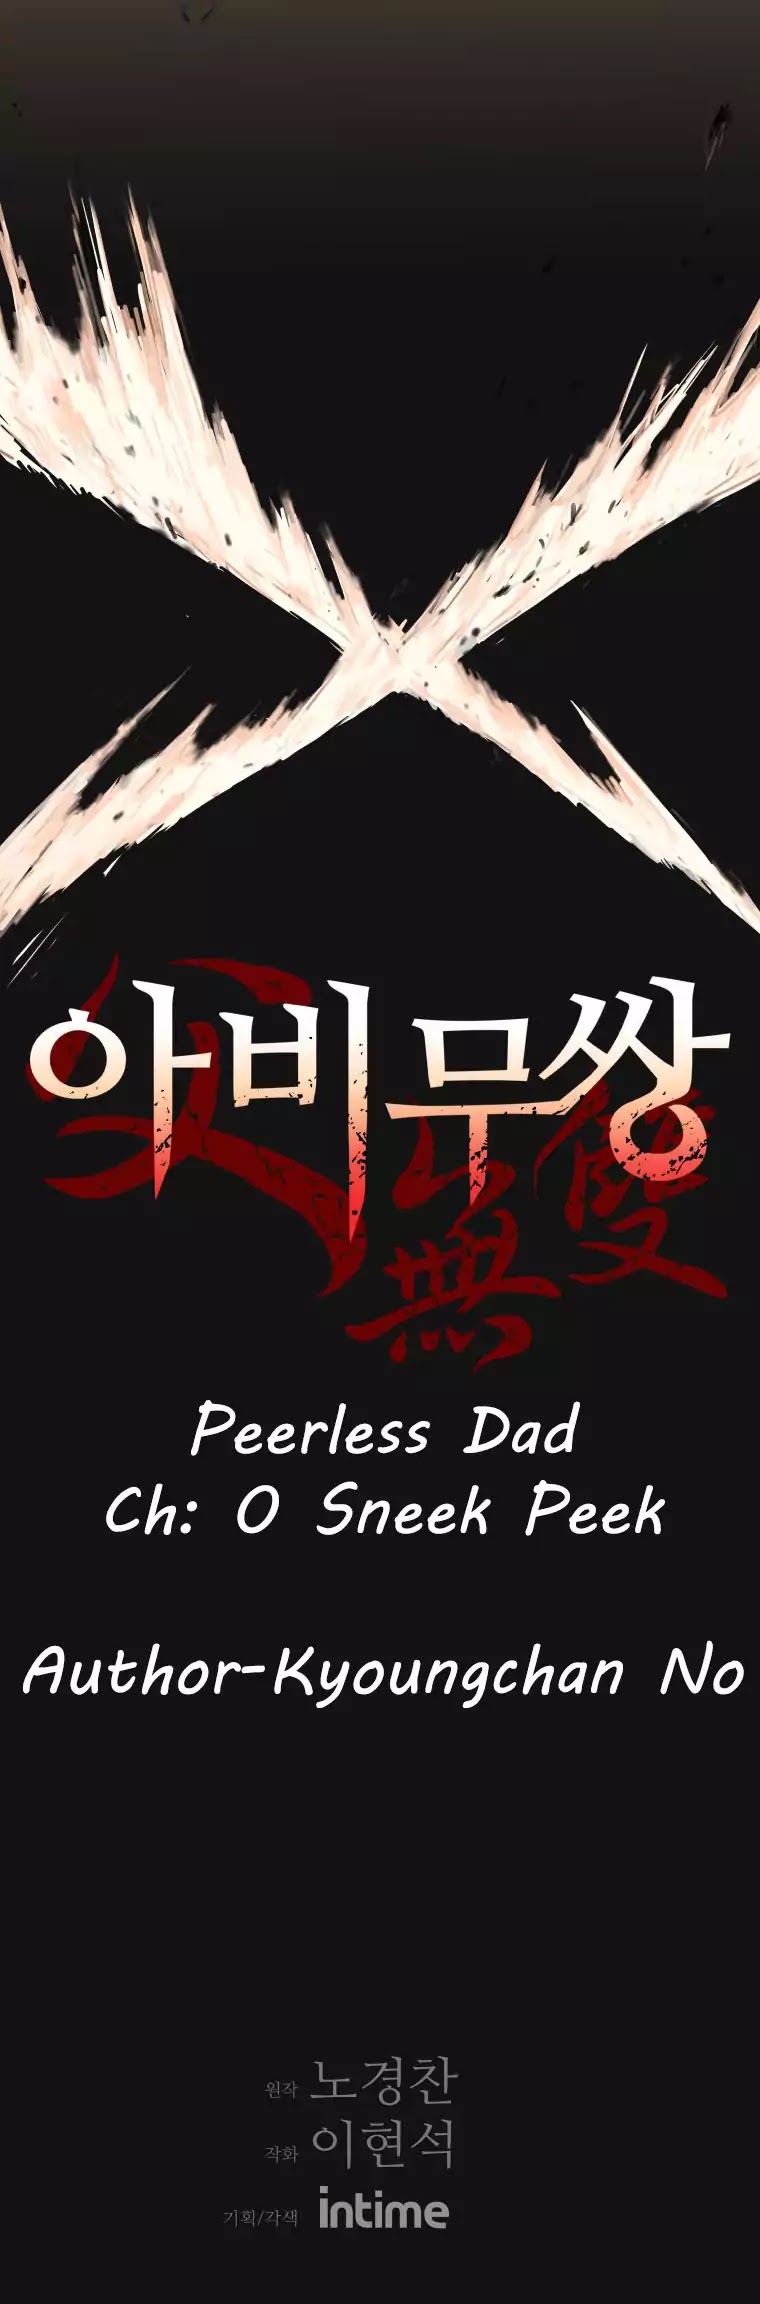 Peerless Dad - Page 4